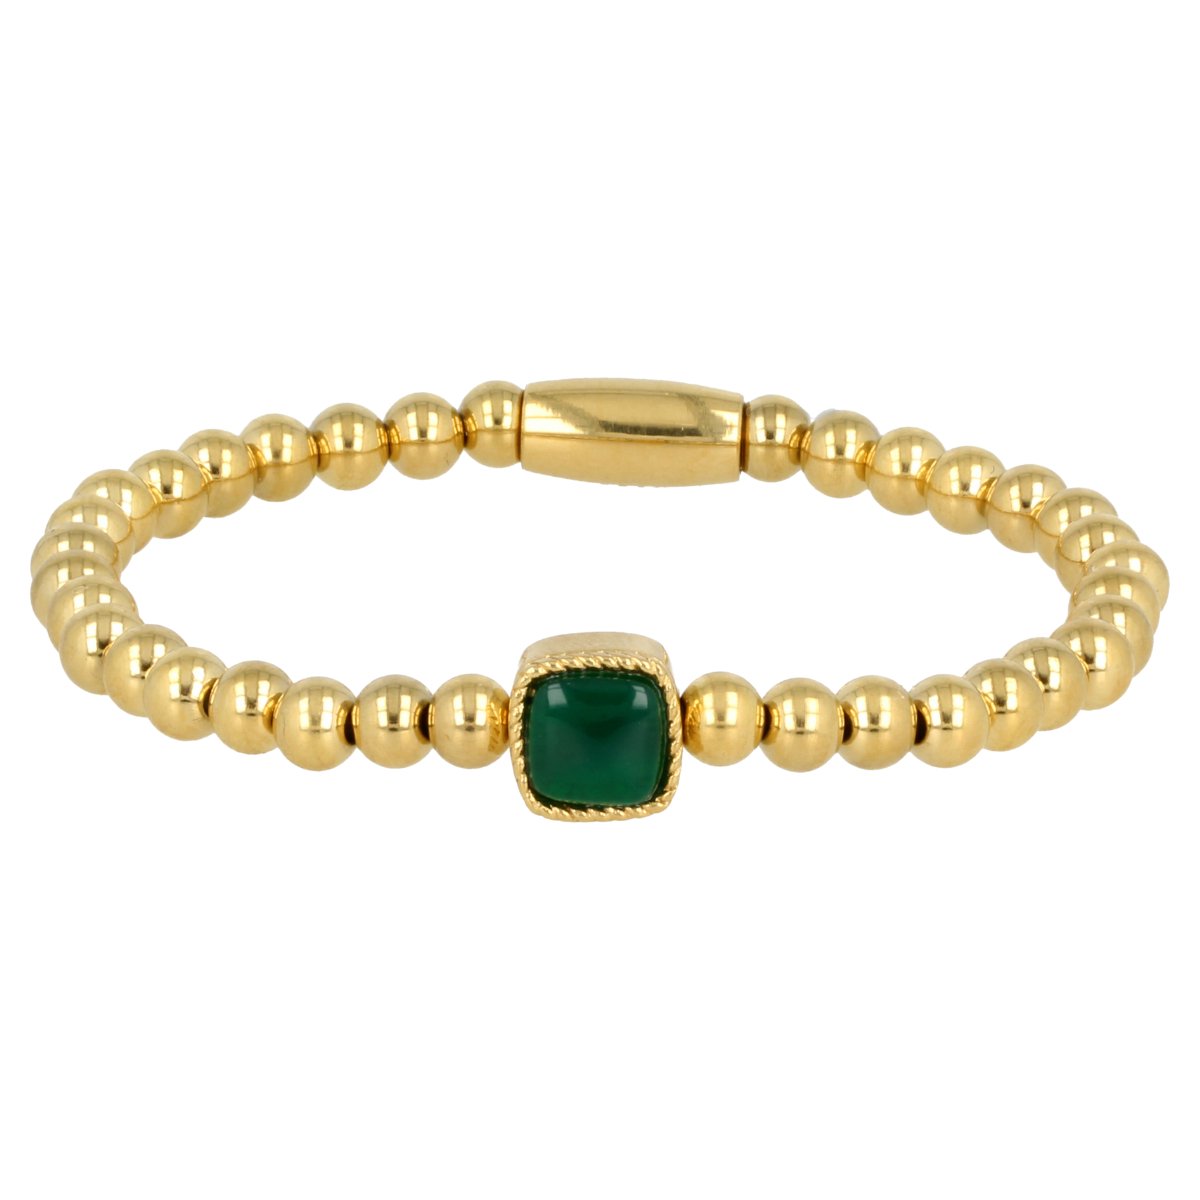 *Gouden elastische bedelarmband met Green Agate edelsteen - Gouden armband met Green Agaat edelsteen - Met luxe cadeauverpakking